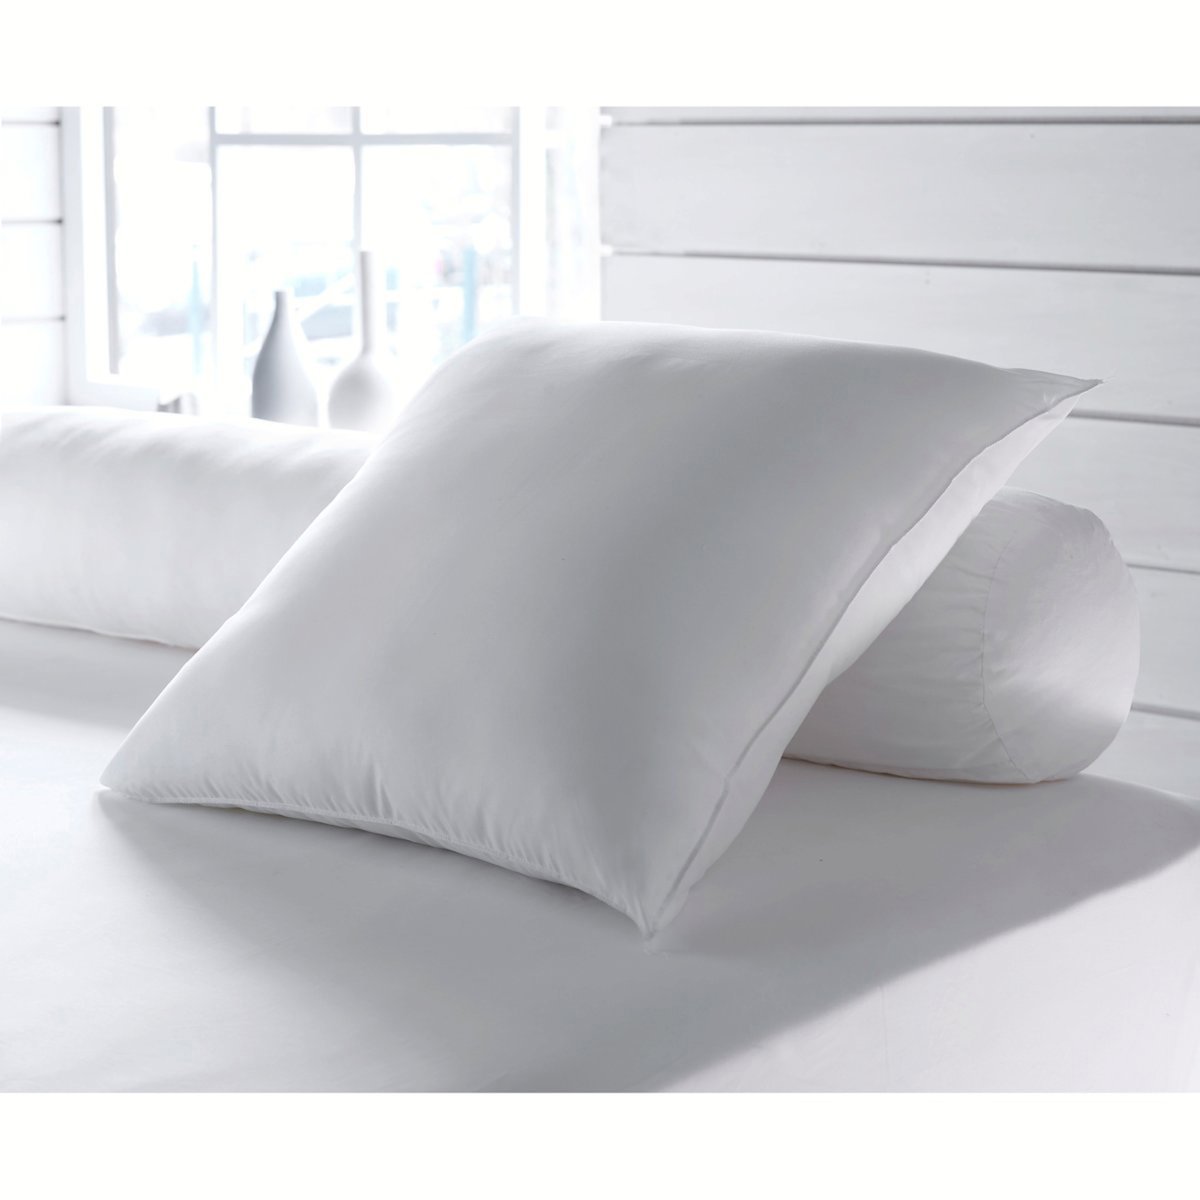 Одеяло La Redoute Экологичное с обработкой против клещей Proneem высокого качества 240 x 220 см белый, размер 240 x 220 см - фото 2